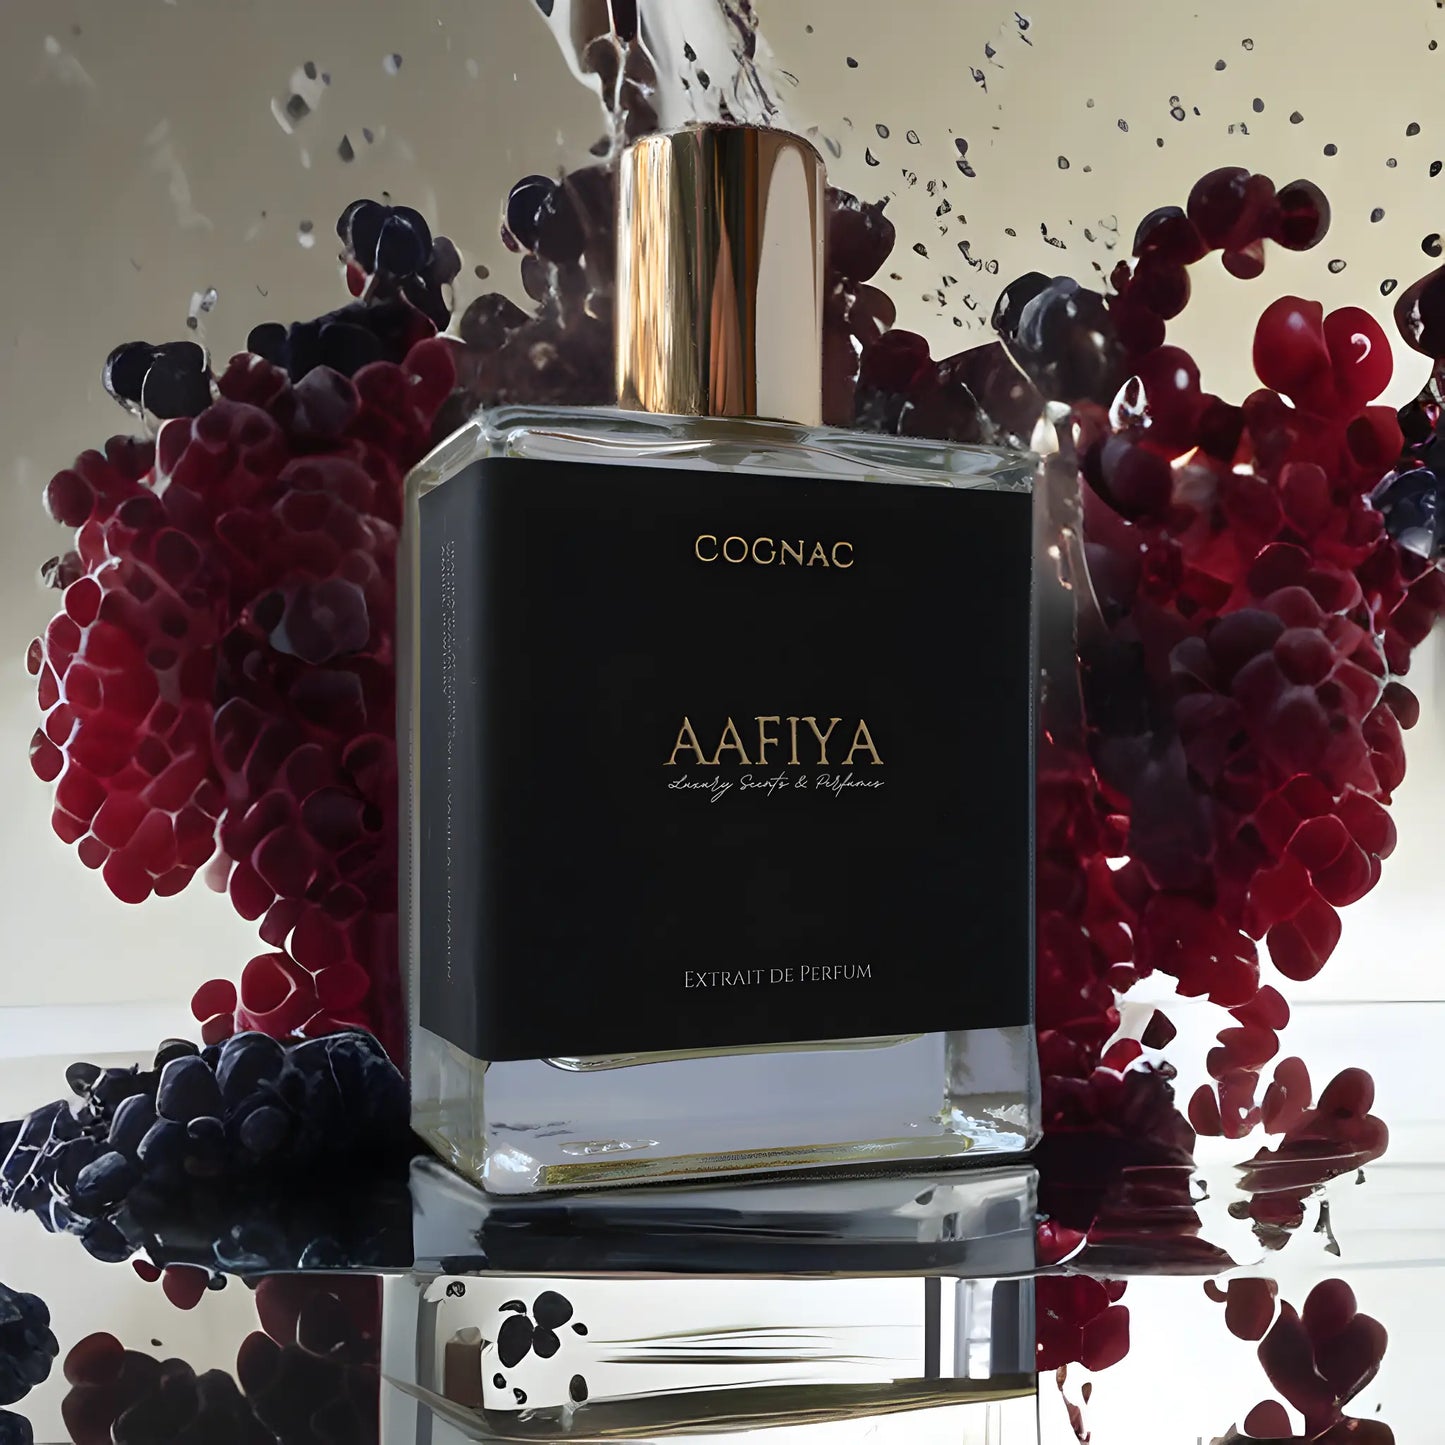 Cognac Aafiya Luxury Scents & Perfumes